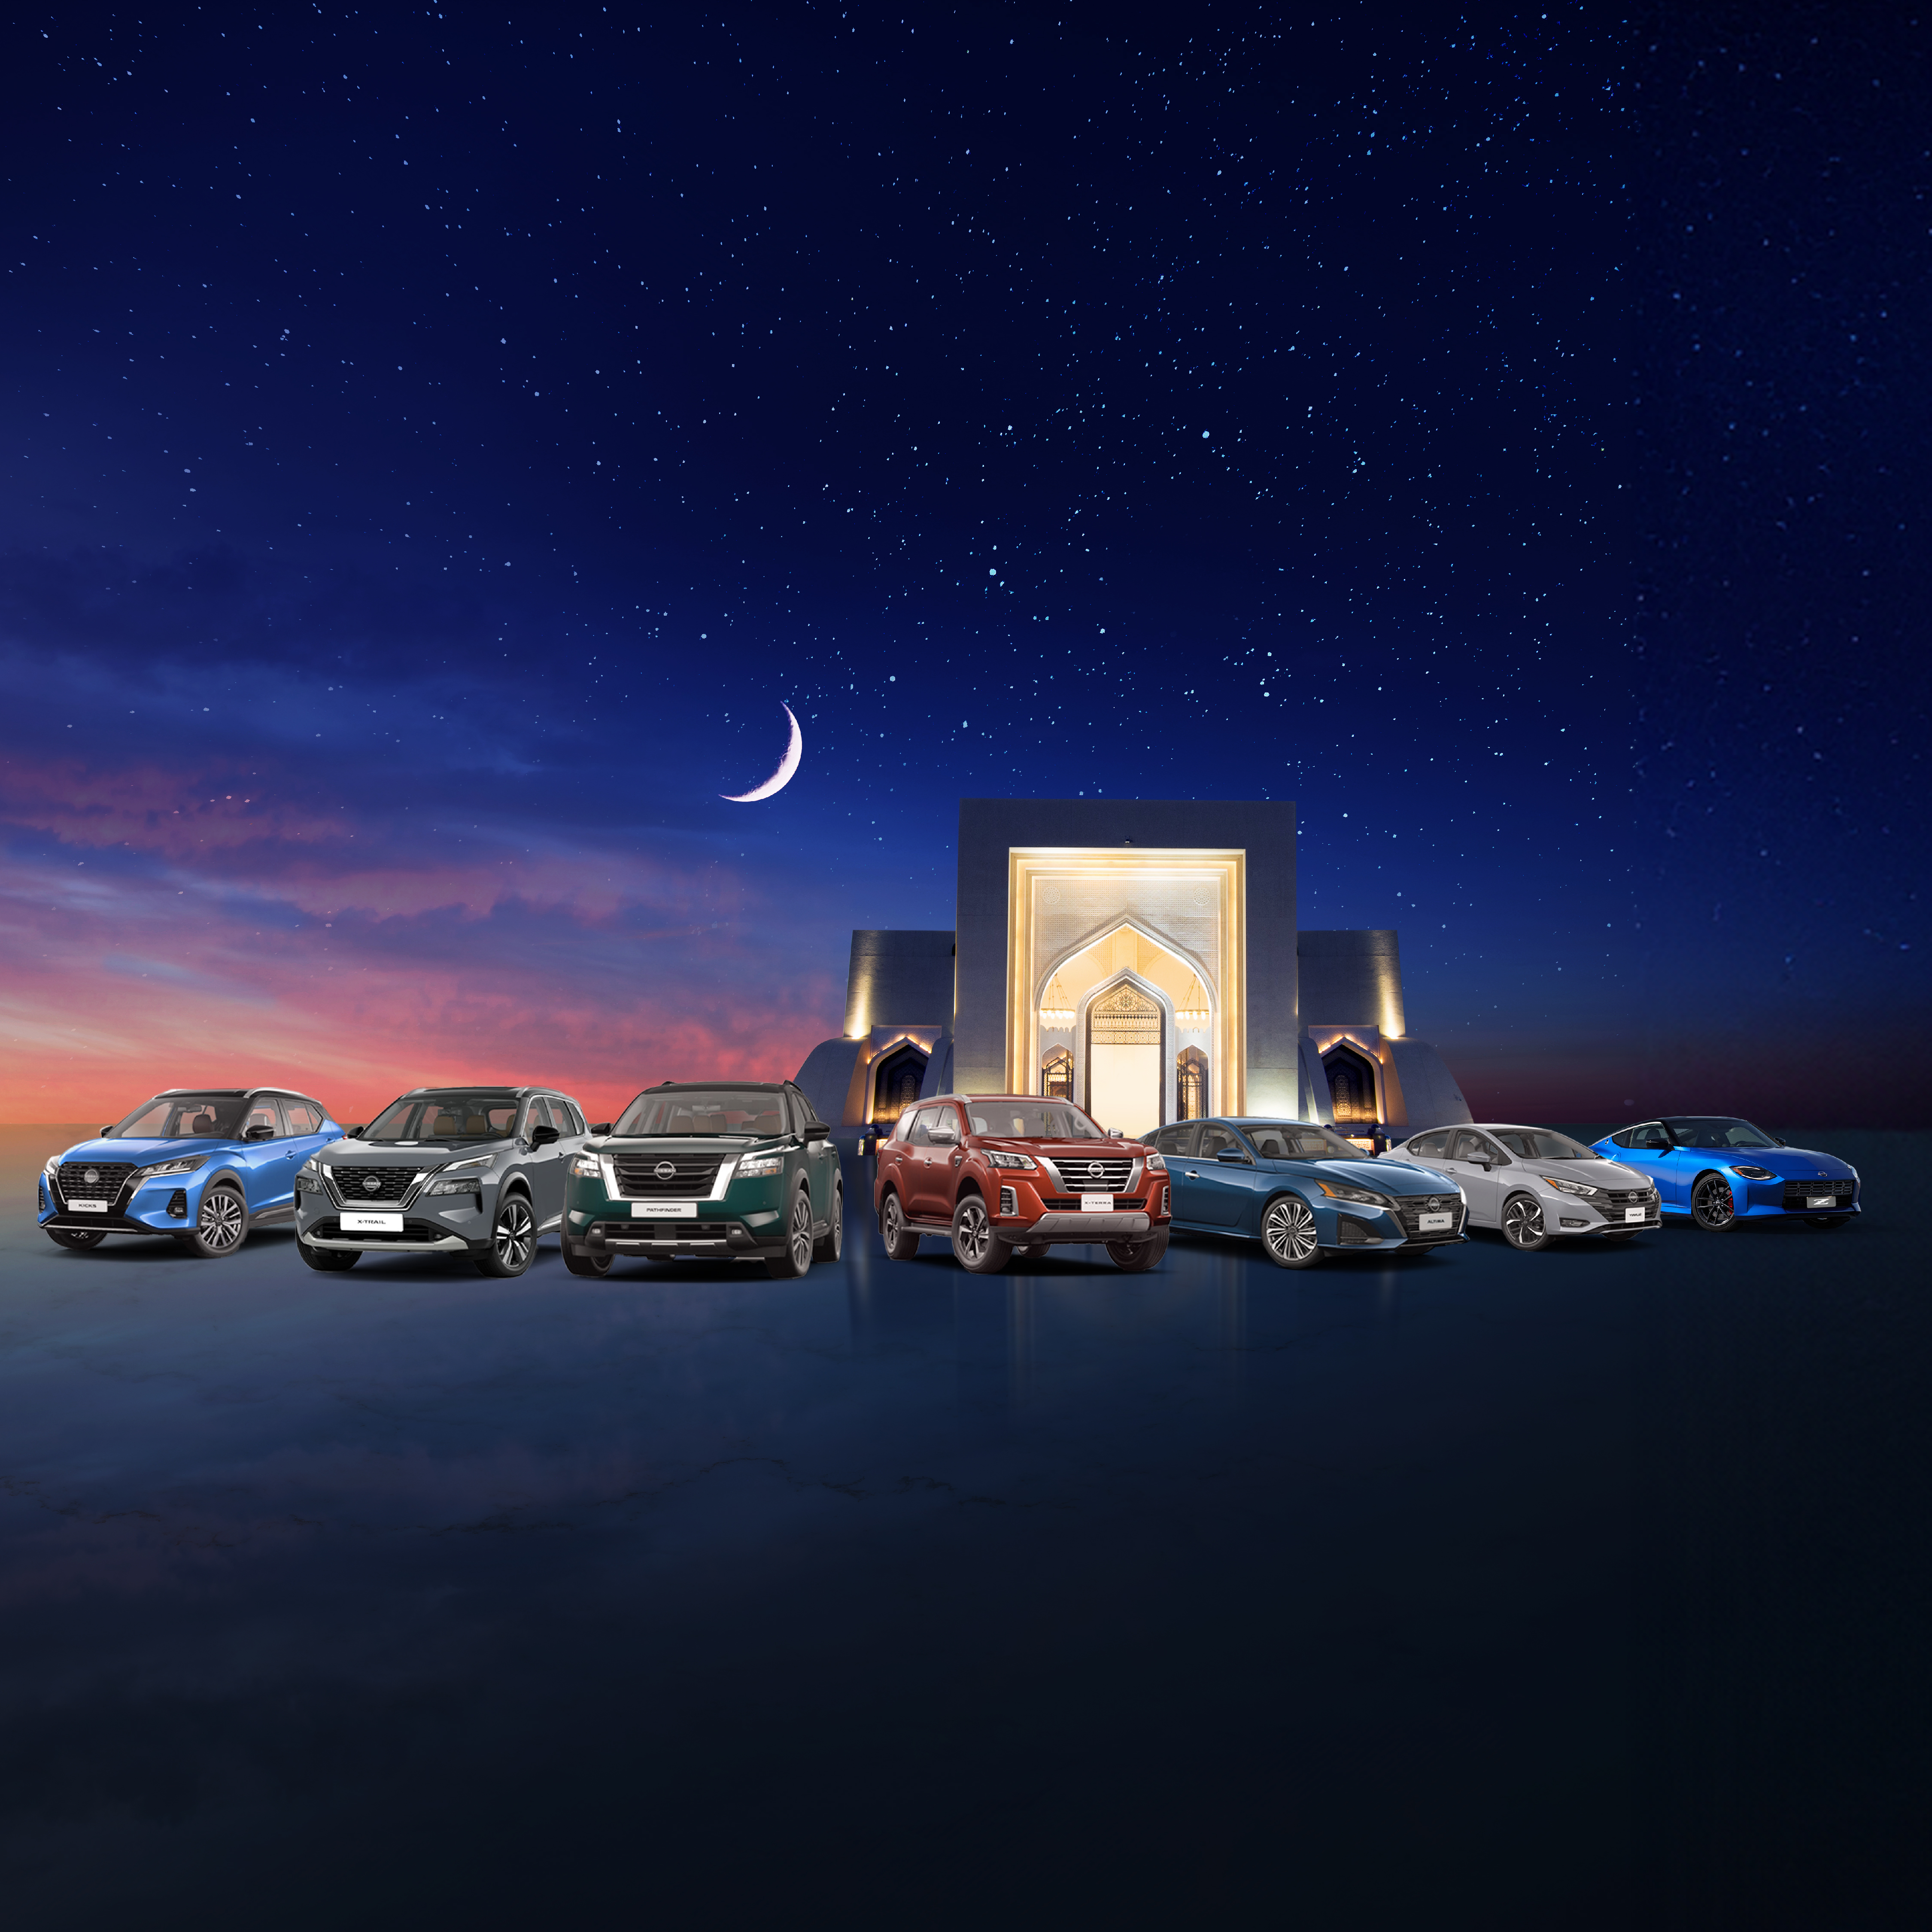 المسعود للسيارات" تطلق عروضاً حصرية خلال شهر رمضان المبارك